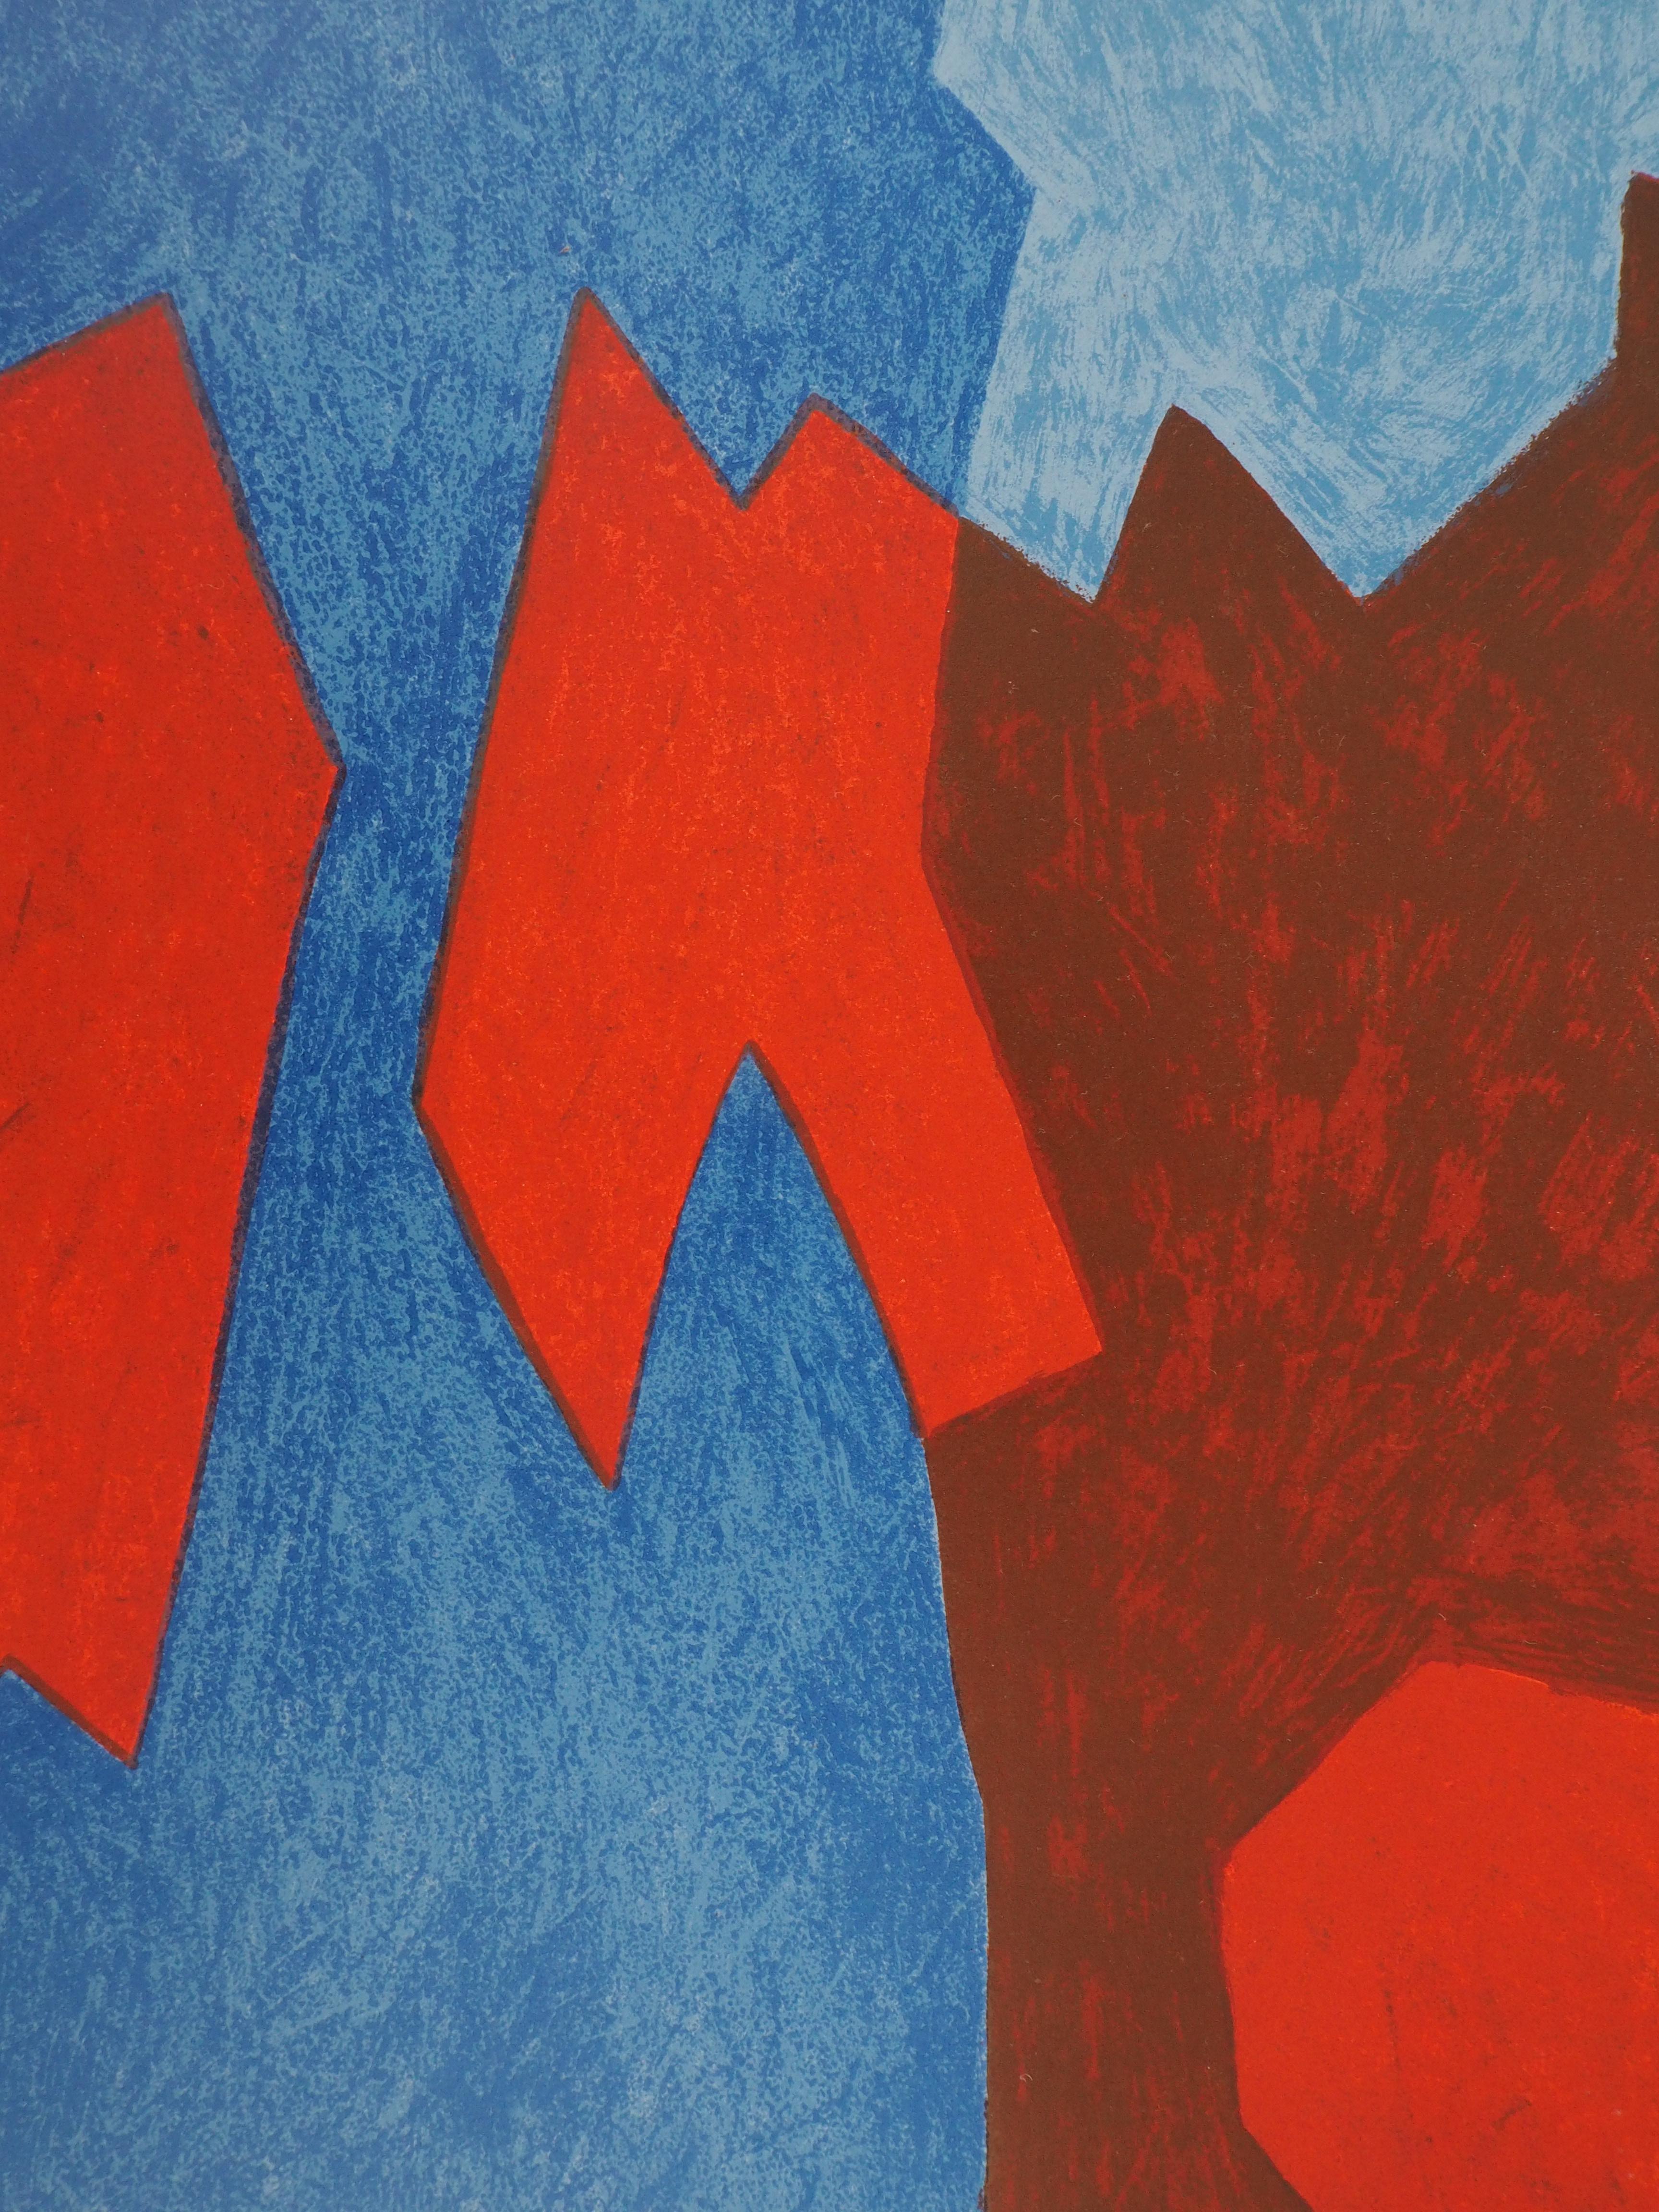 Serge POLIAKOFF
Komposition in Blau und Rot, 1968

Original-Lithographie 
(Gedruckt in der Werkstatt Mourlot)
Vorzeichenlos
Auf schwerem Papier 31 x 24 cm (ca. 12 x 10 inch)
Herausgegeben von San Lazzaro im Jahr 1968

REFERENZEN : Werkverzeichnis